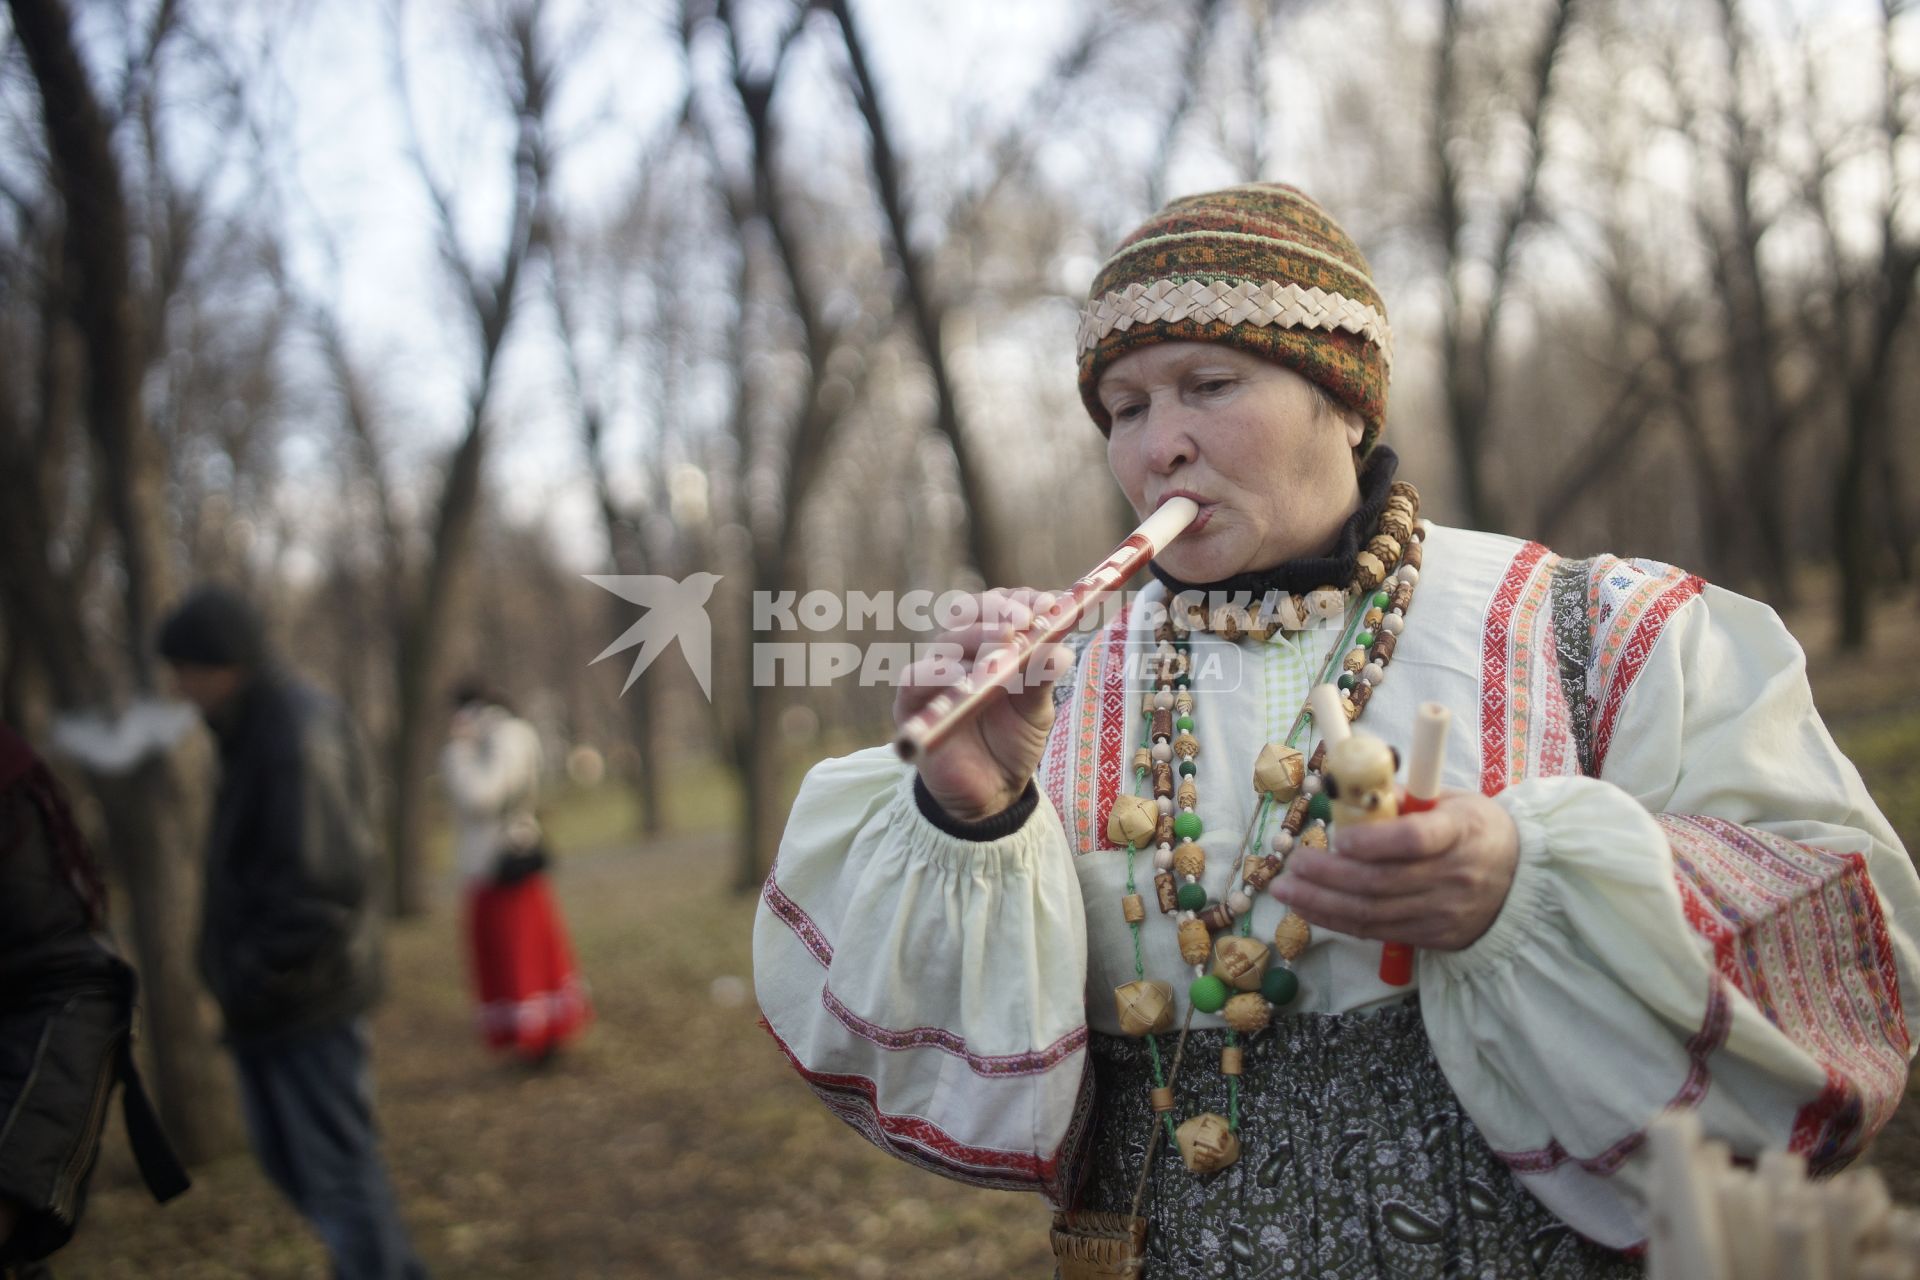 Фестиваль традиционной мужской культуры `Дмитриев день`. На снимке: женщина в национальном костюме со свирелью.